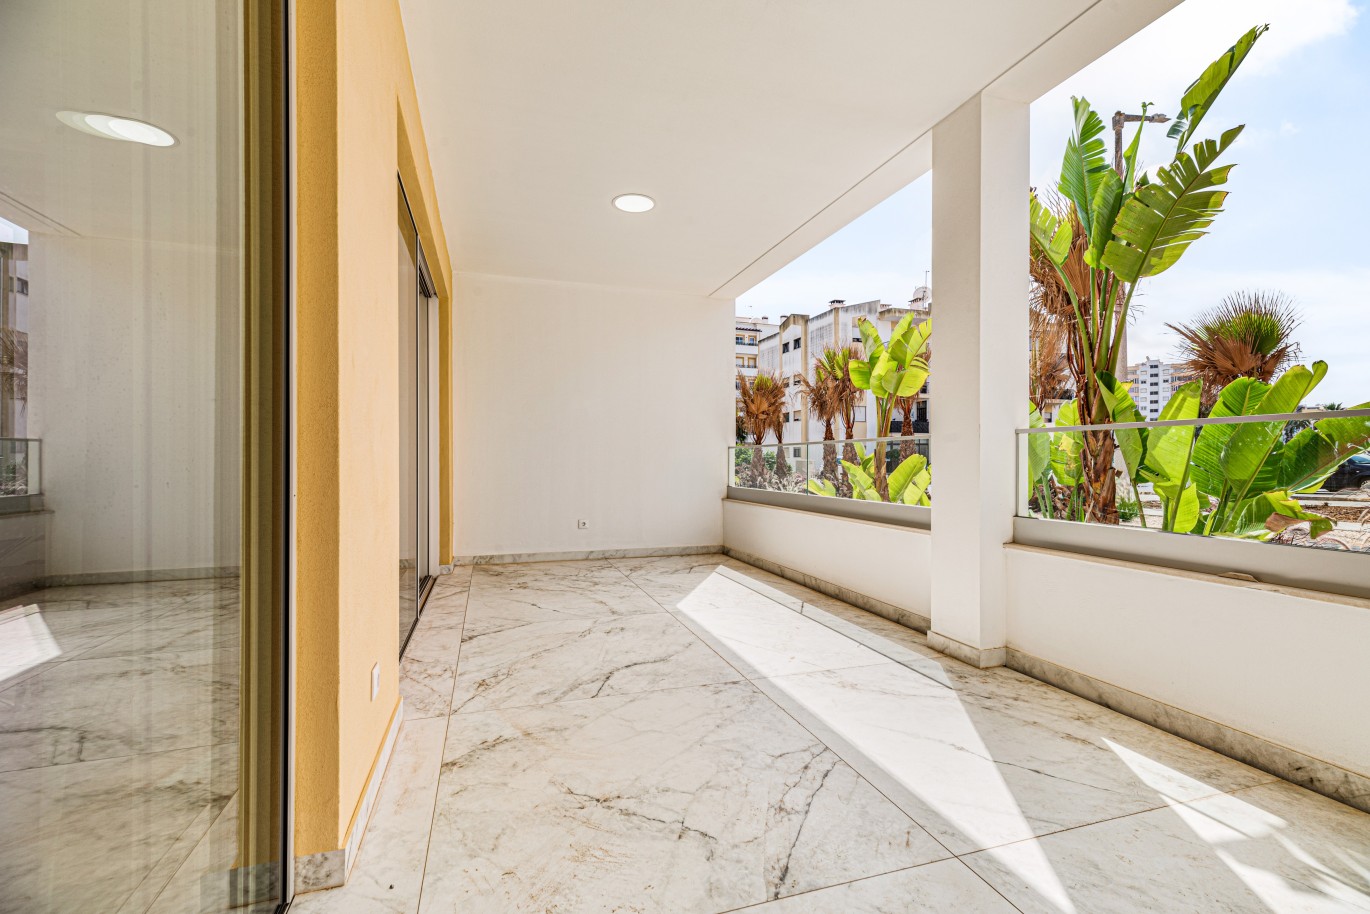 Apartamento, com terraço, para venda, em Lagos, Algarve_237998